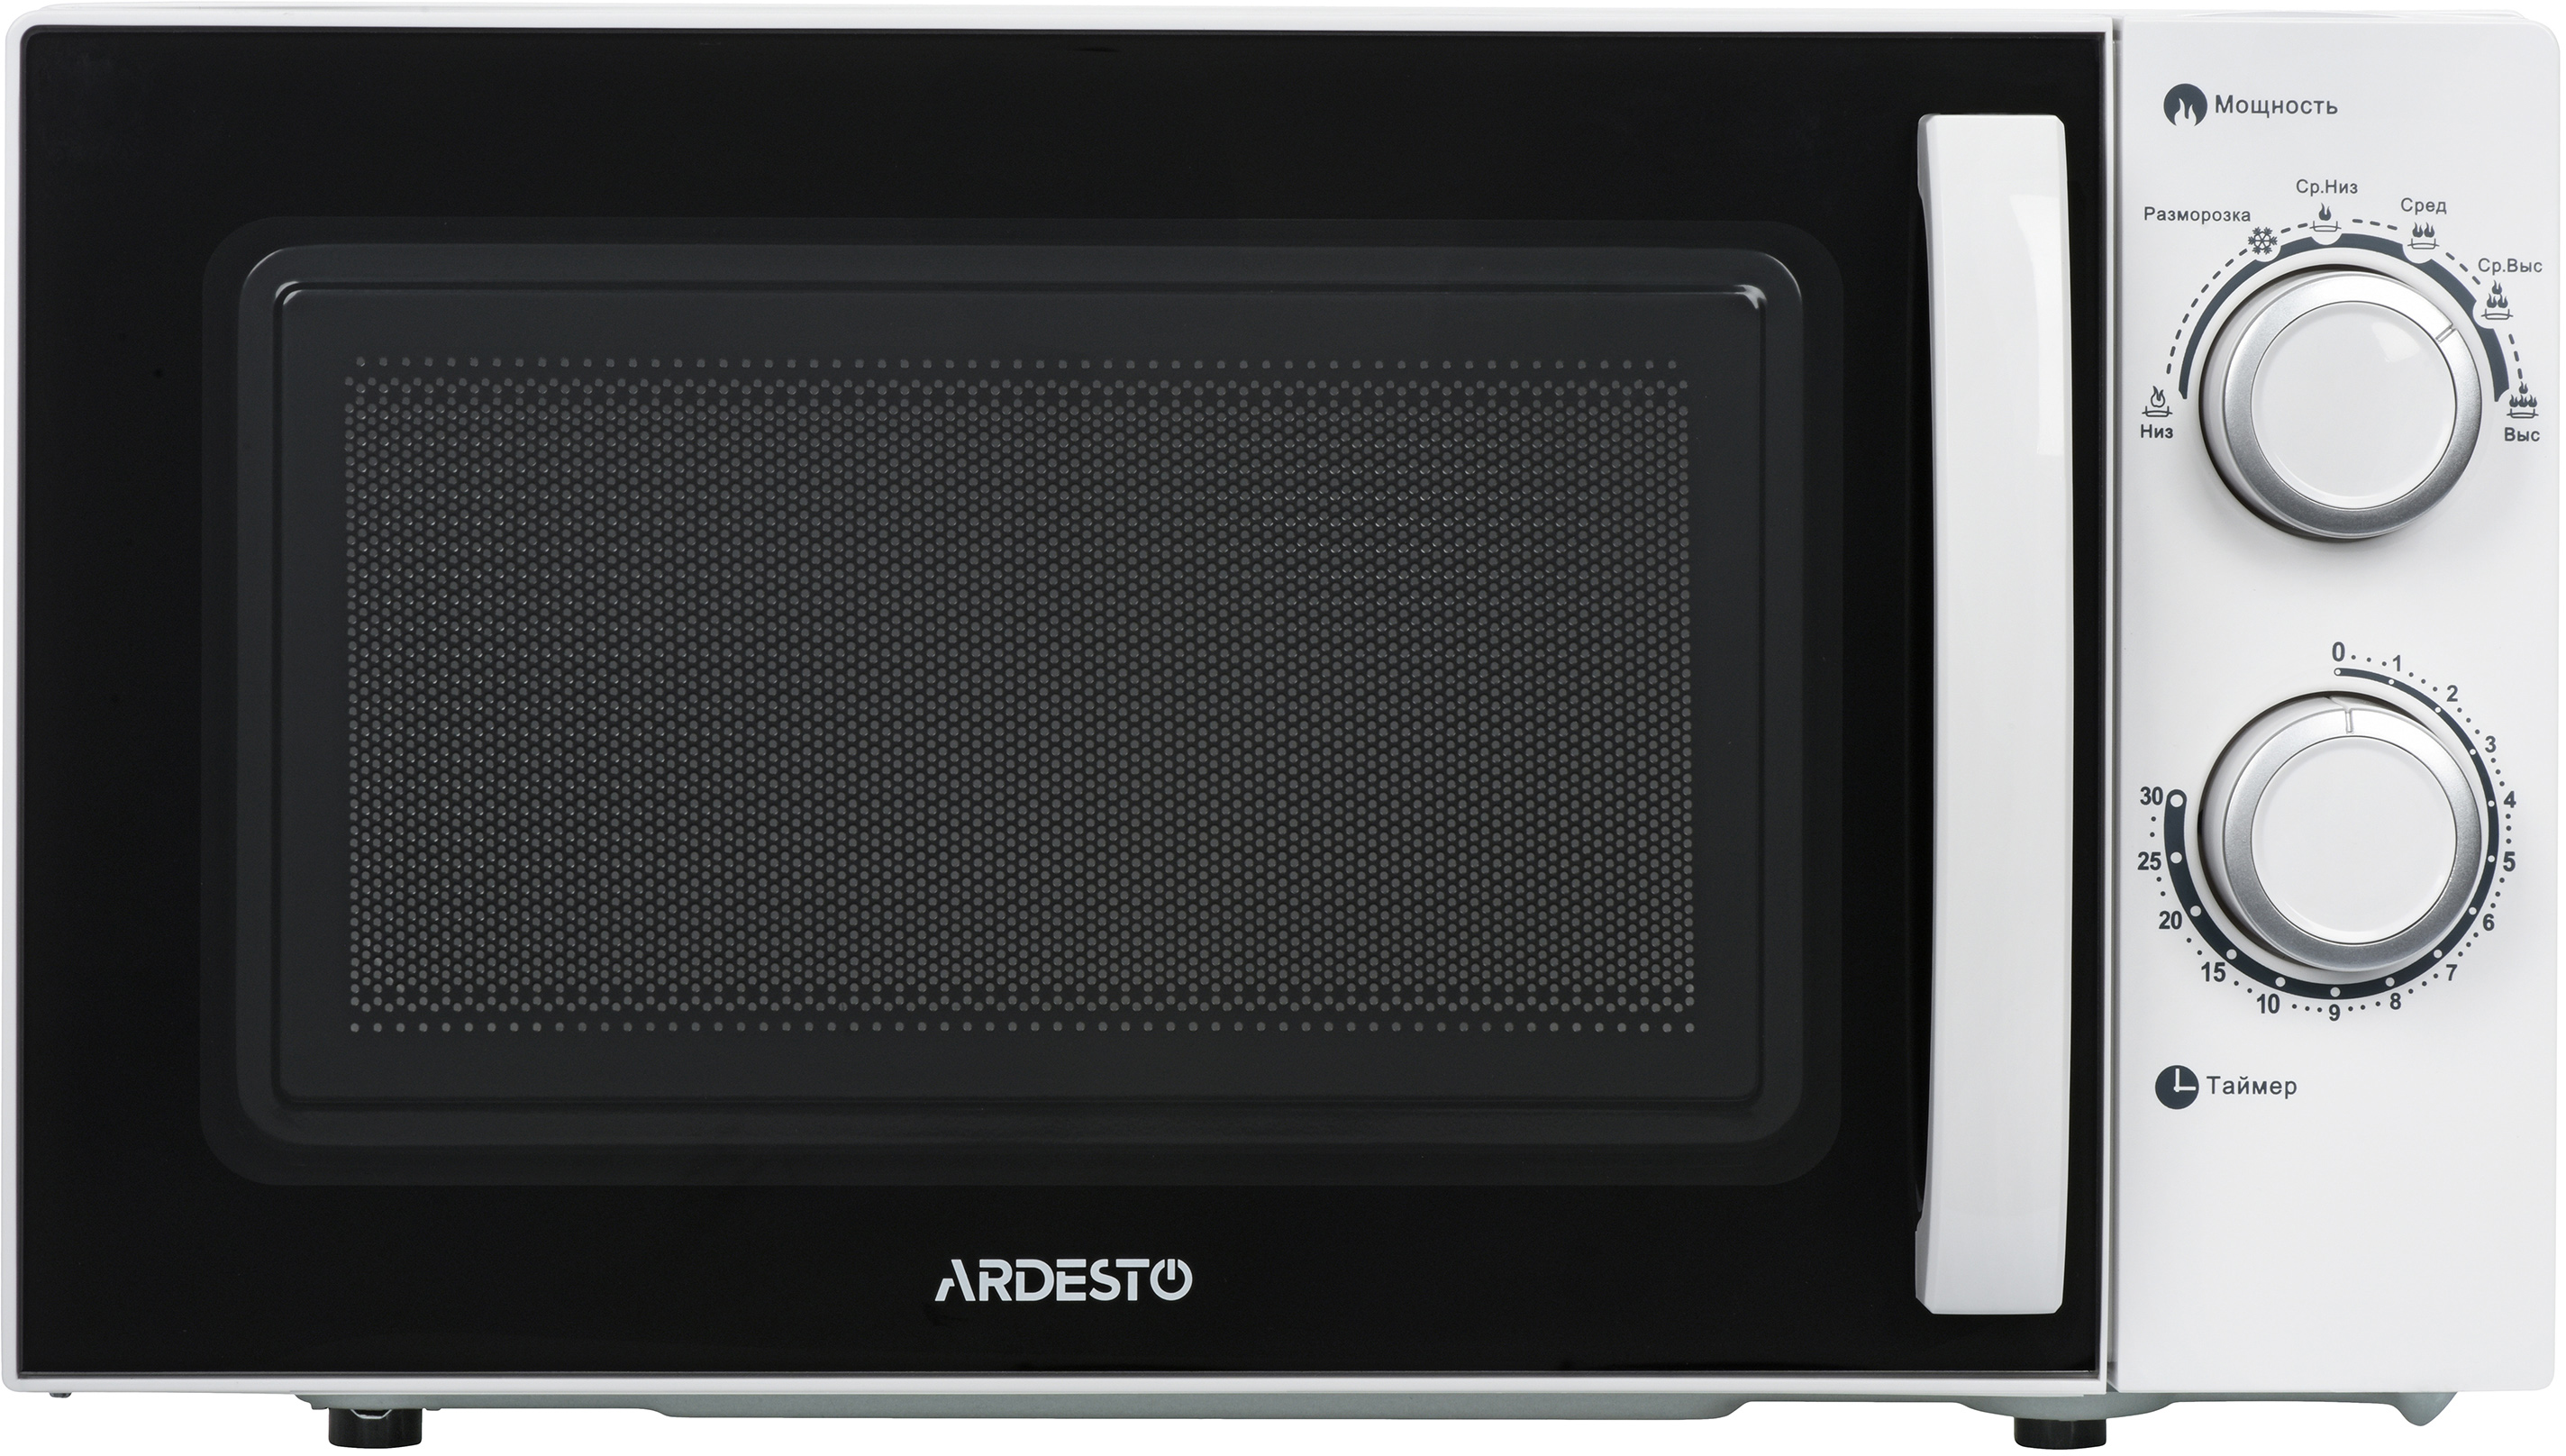 Микроволновая печь Ardesto GO-S725W цена 2299.00 грн - фотография 2